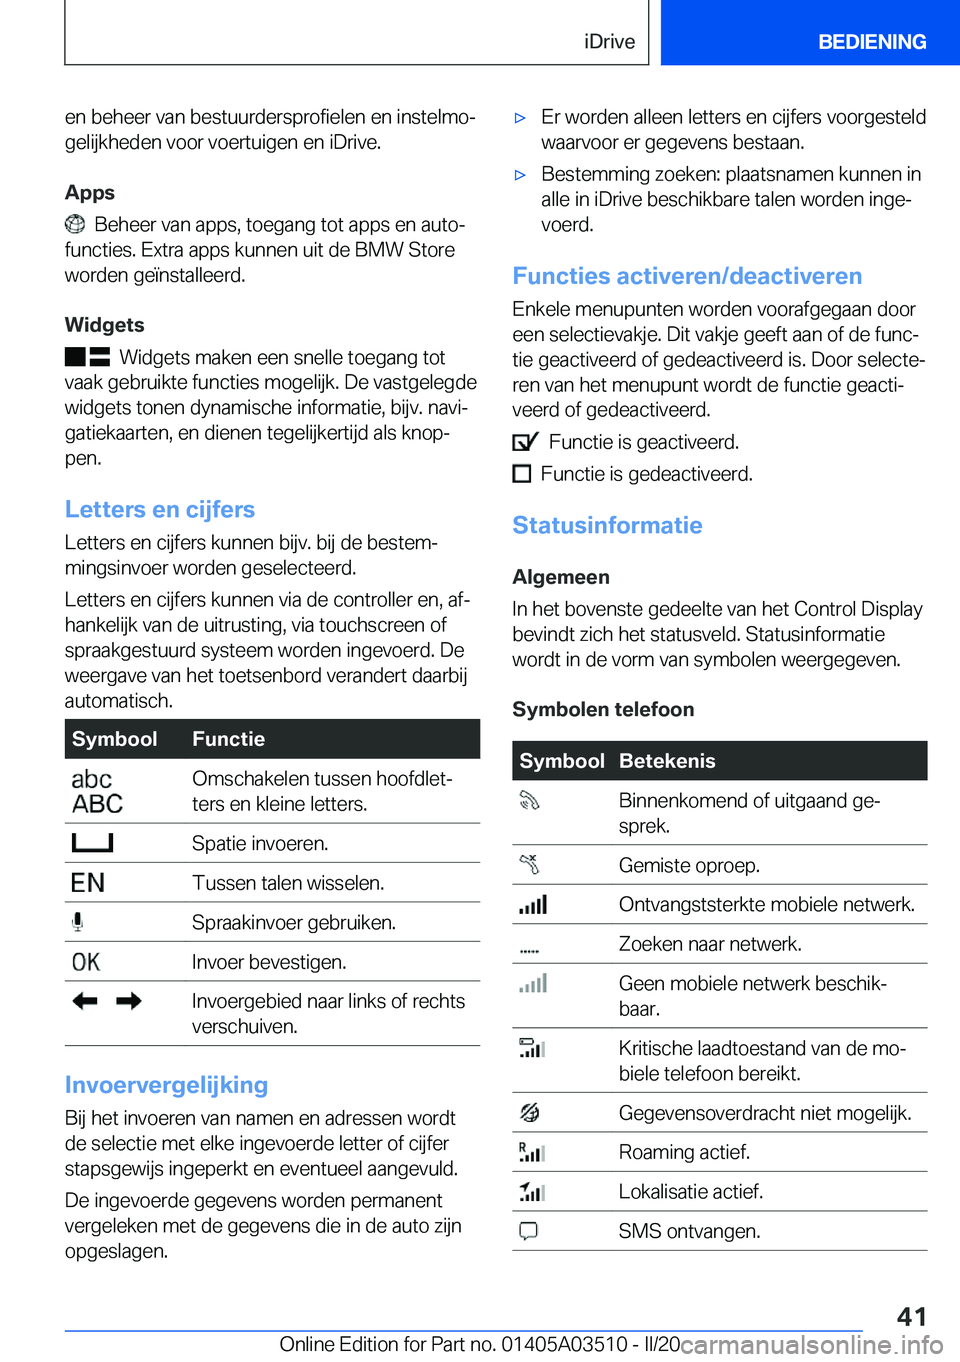 BMW X3 2020  Instructieboekjes (in Dutch) �e�n��b�e�h�e�e�r��v�a�n��b�e�s�t�u�u�r�d�e�r�s�p�r�o�f�i�e�l�e�n��e�n��i�n�s�t�e�l�m�oj�g�e�l�i�j�k�h�e�d�e�n��v�o�o�r��v�o�e�r�t�u�i�g�e�n��e�n��i�D�r�i�v�e�.
�A�p�p�s
���B�e�h�e�e�r��v